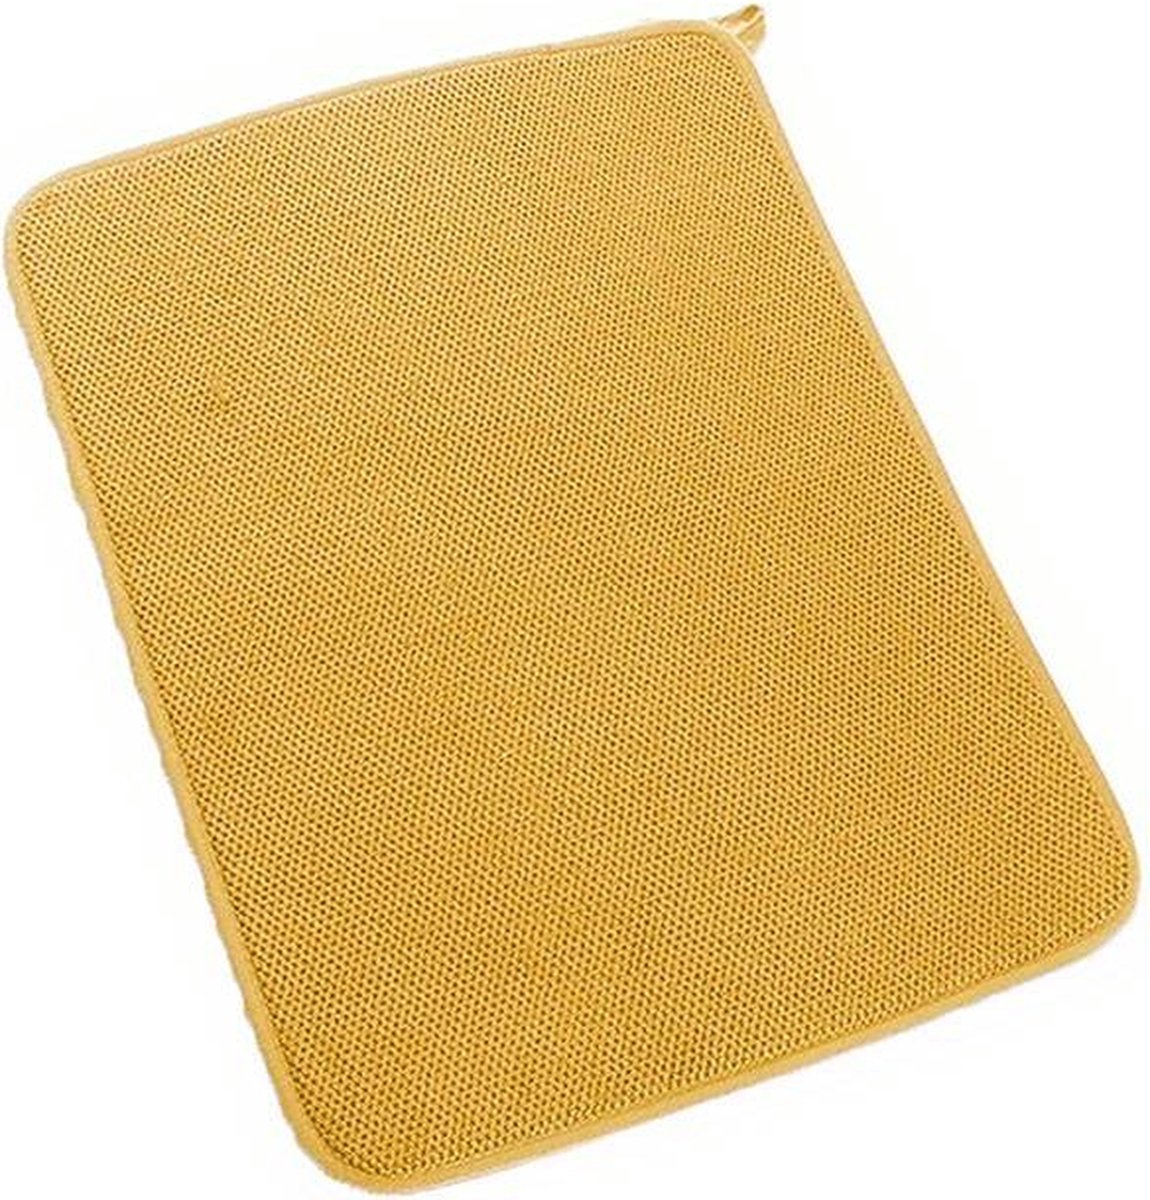 Afdruipmat - Droogmat - Keukentafel droogmat - Absorberend afvoerkussen - Keuken tapijten - Koffiebar mat - 30x40cm - Aanrechtmat - Barmat - Diverse kleuren - Polyester - Gele